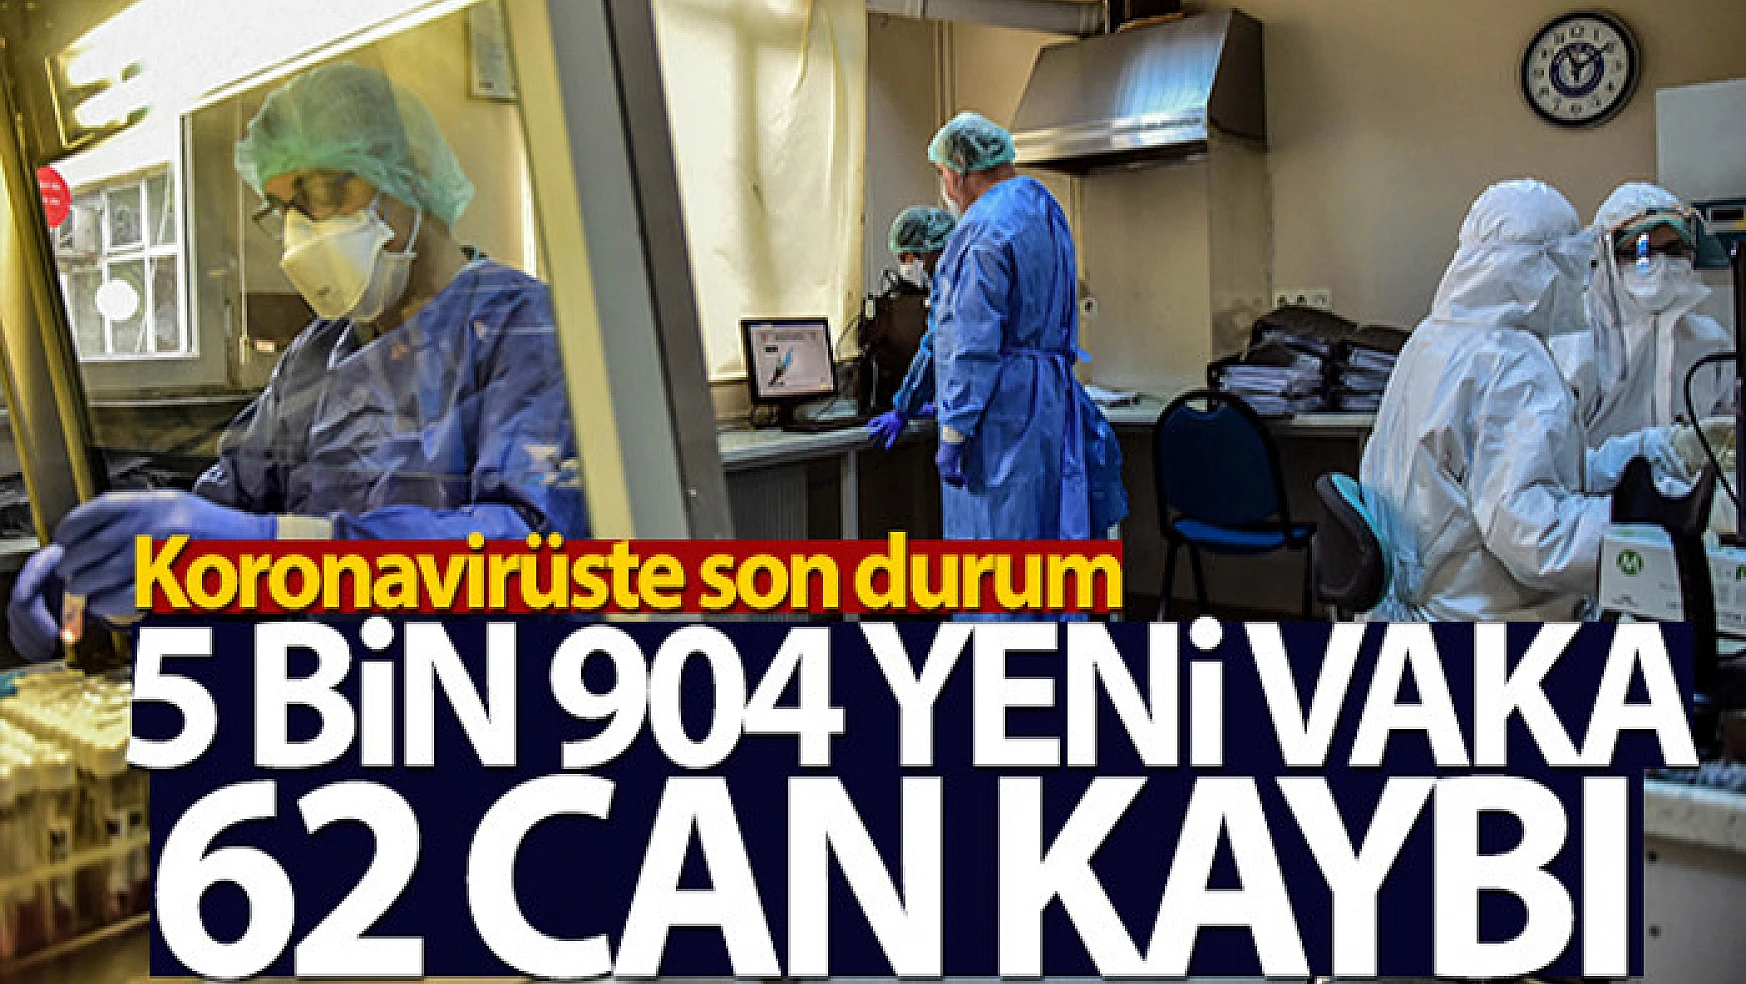 Türkiye'de son 24 saatte 5.904 koronavirüs vakası tespit edildi